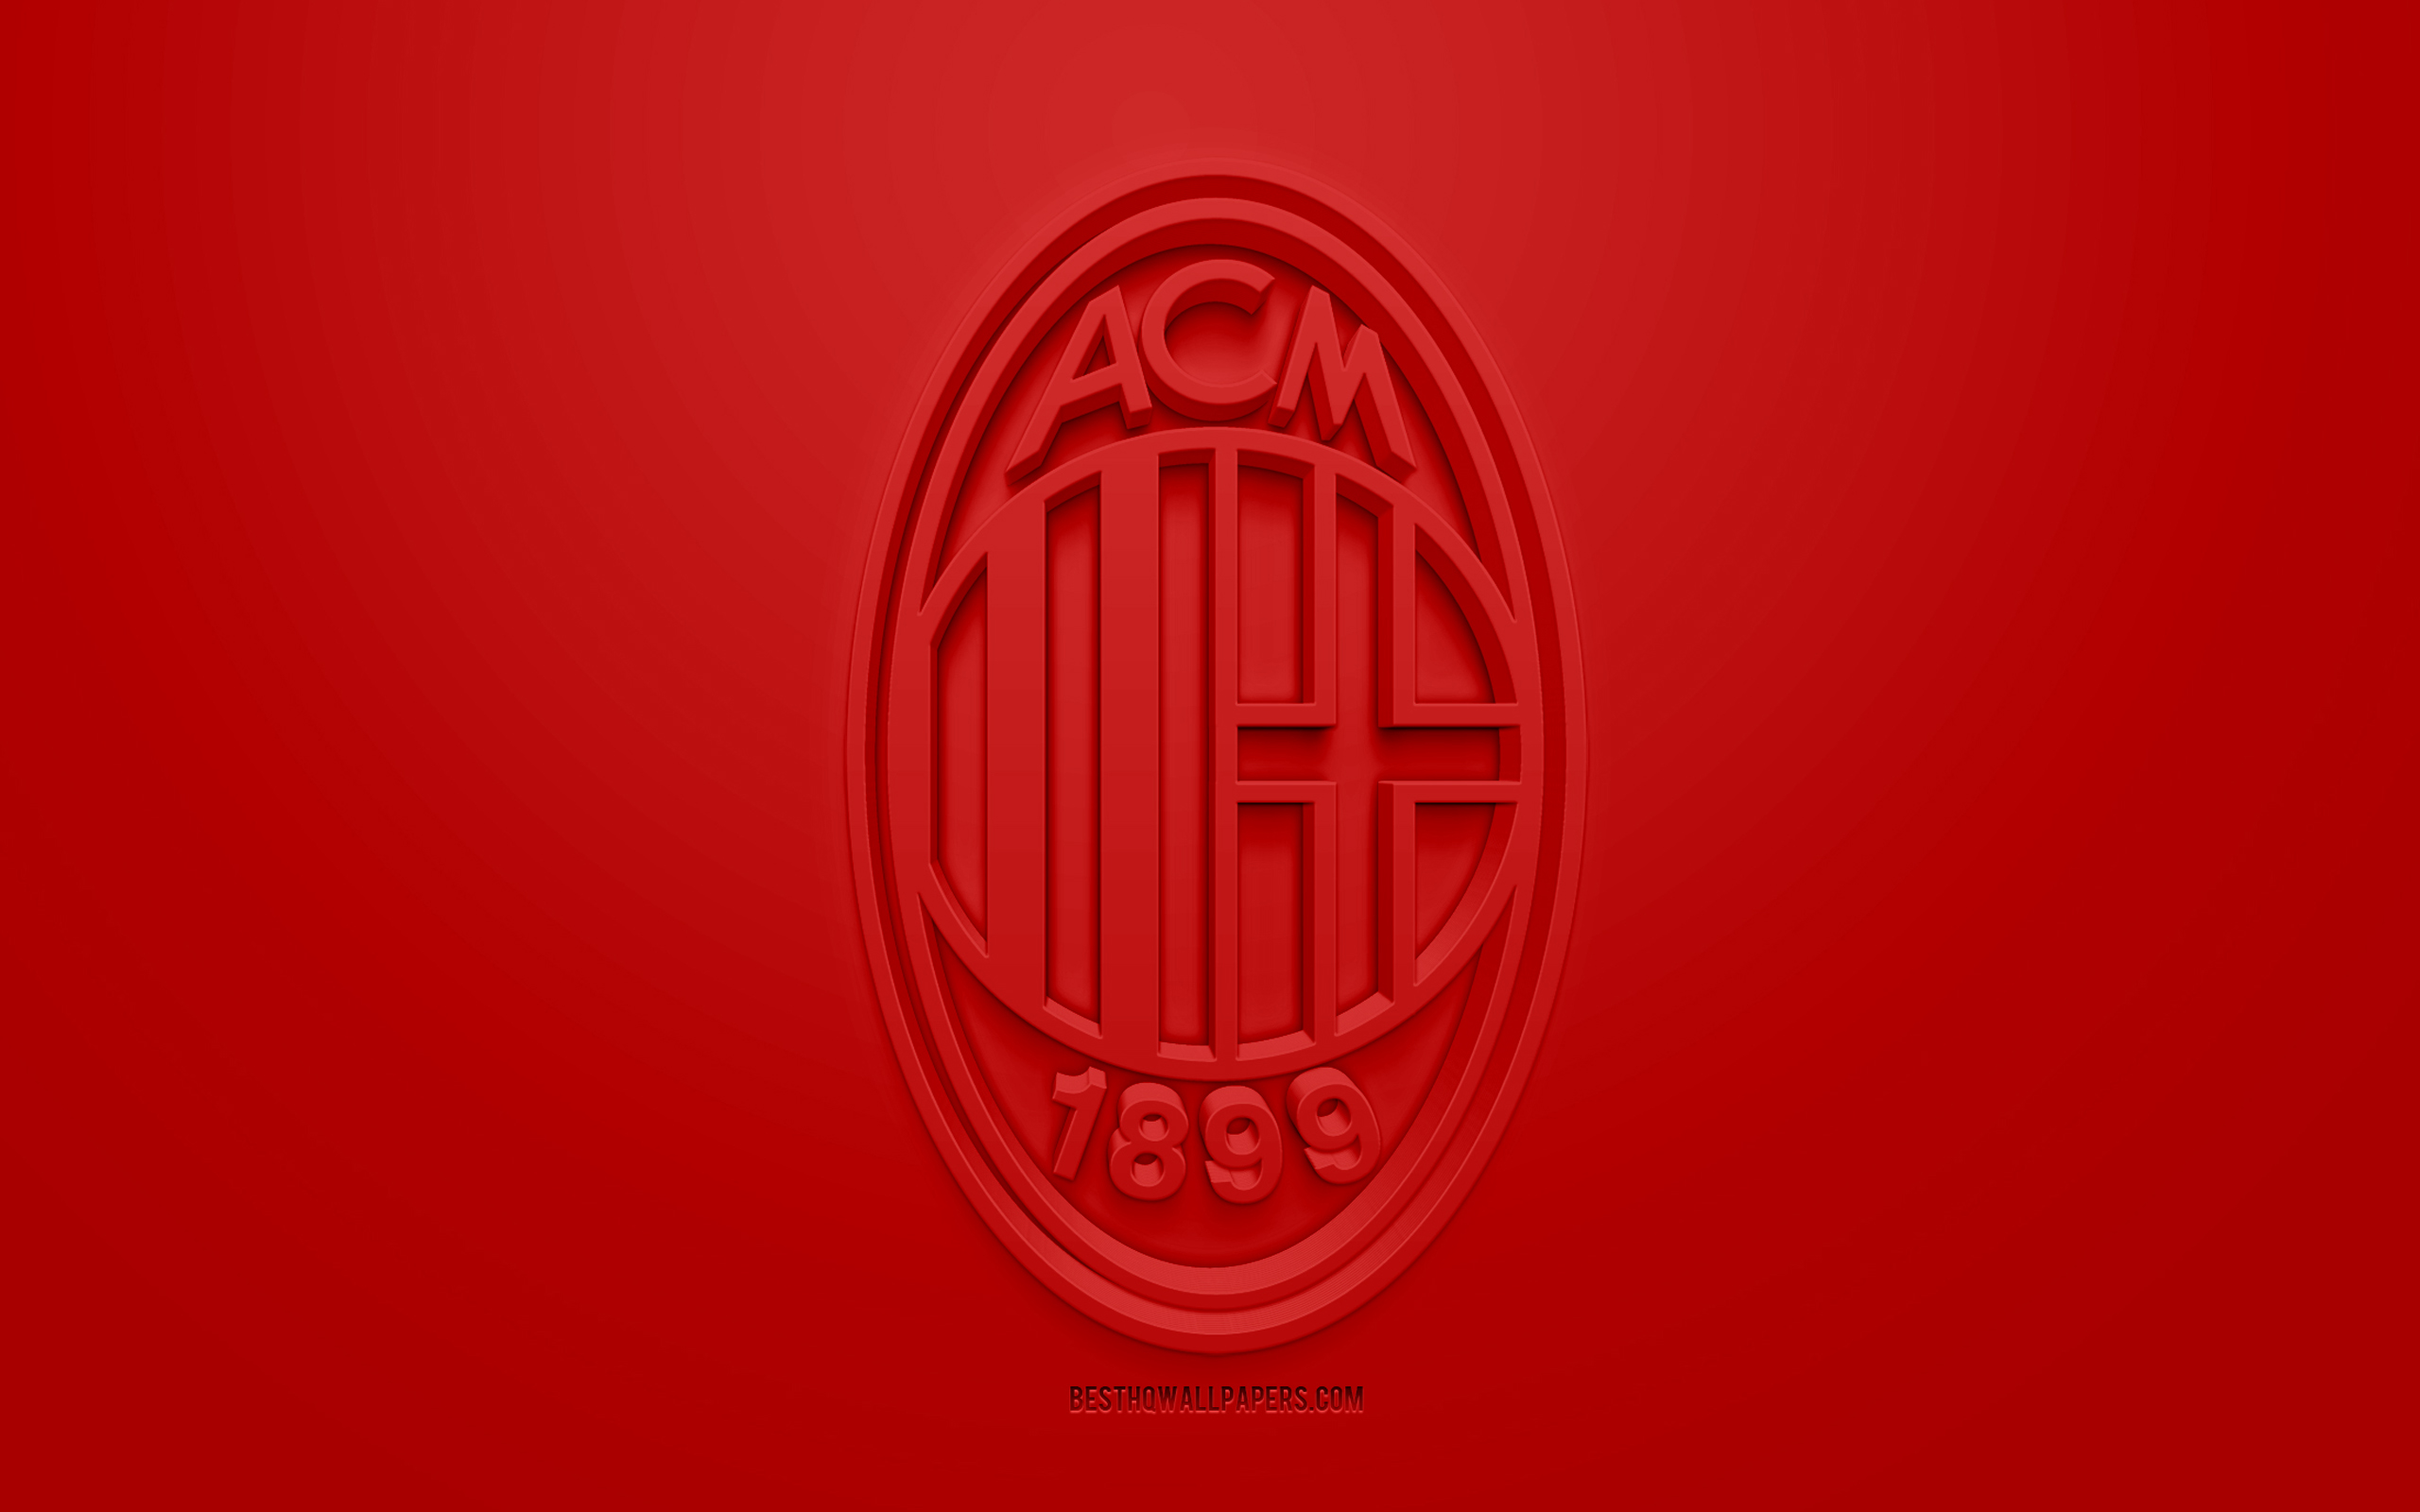 ダウンロード画像 Acミラン 創作3dロゴ 赤の背景 3dエンブレム イタリアのサッカークラブ エクストリーム ゾー ミラノ イタリア 3dアート サッカー お洒落な3dロゴ 画面の解像度 2560x1600 壁紙デスクトップ上